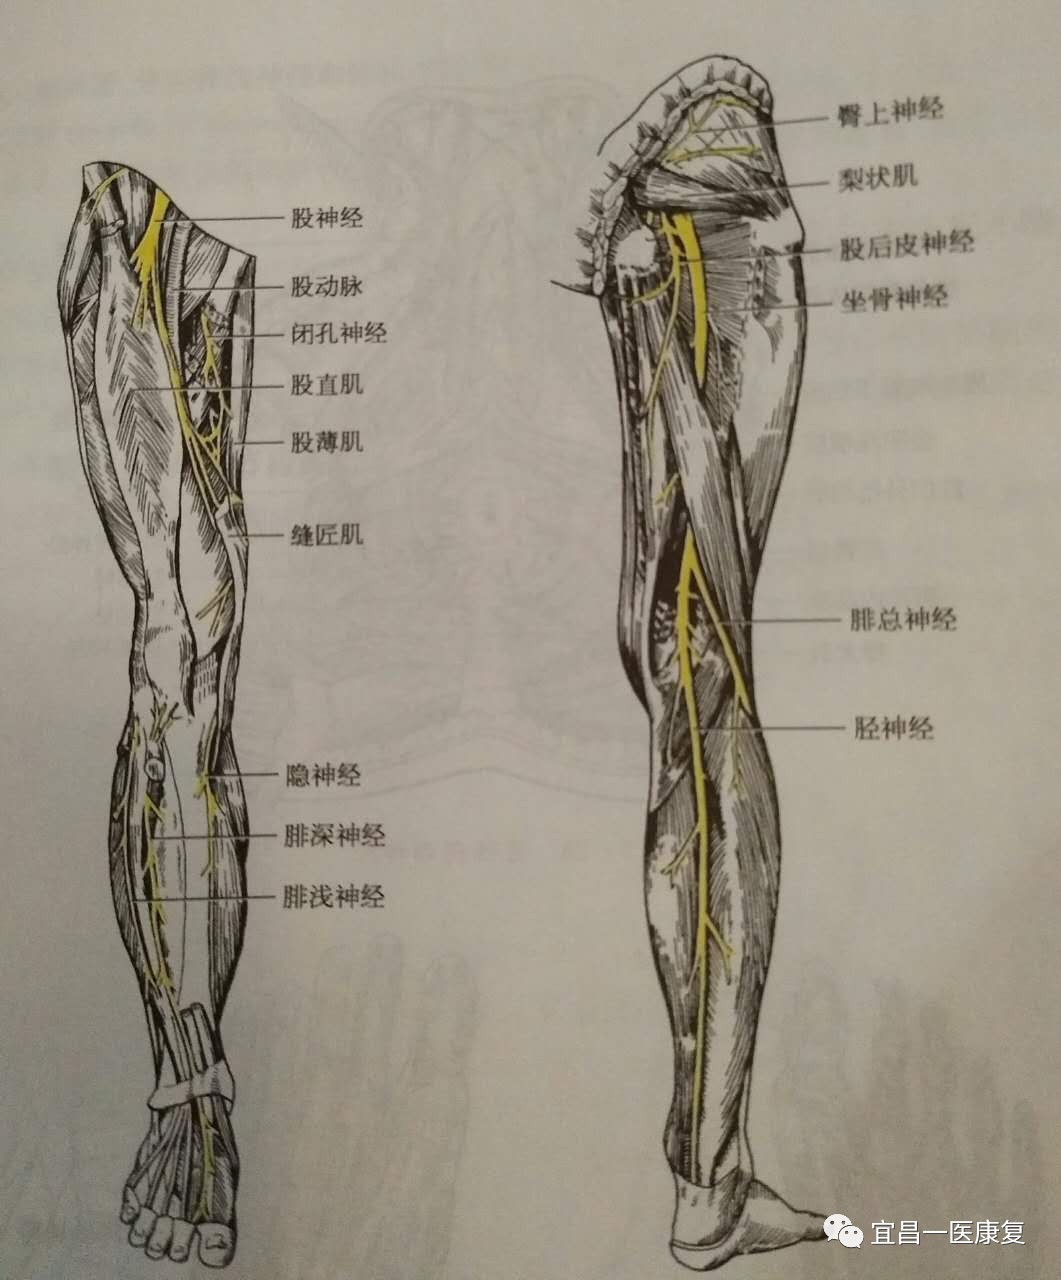 图339 小腿神经（外侧面观）-人体解剖组织学-医学